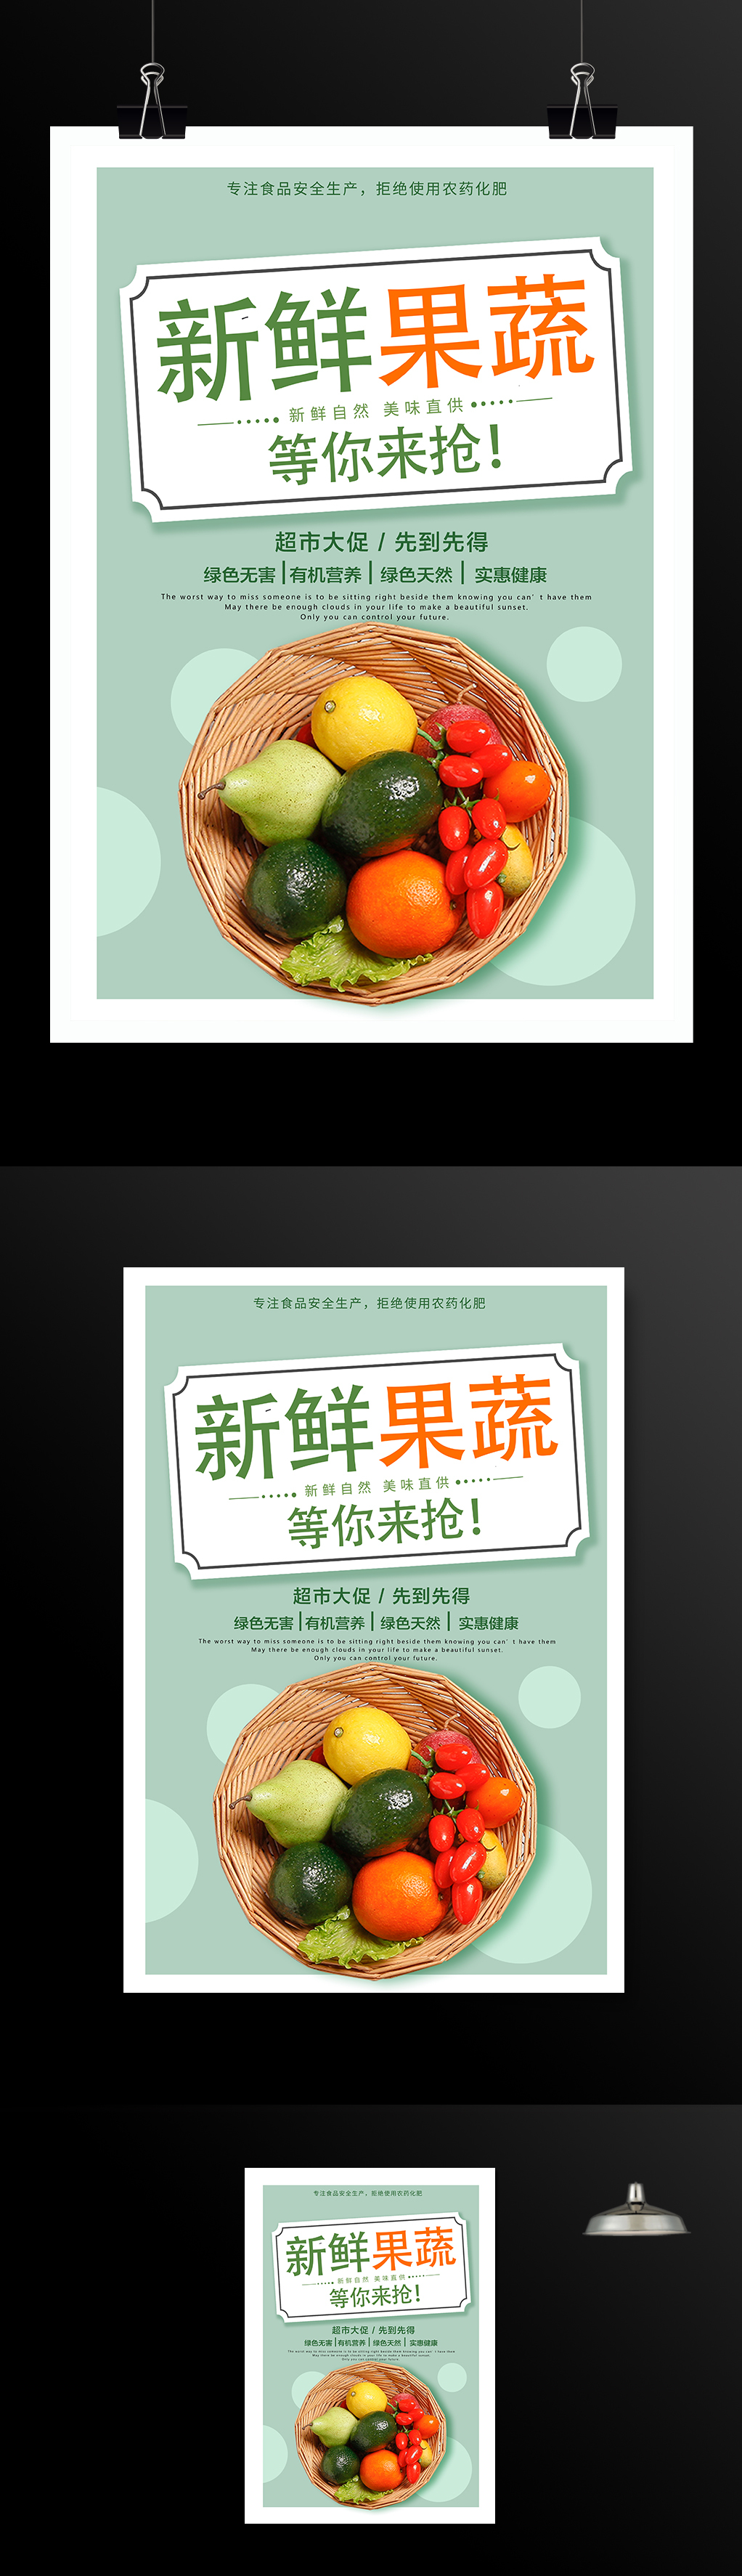 新鲜果蔬优惠促销活动海报模板